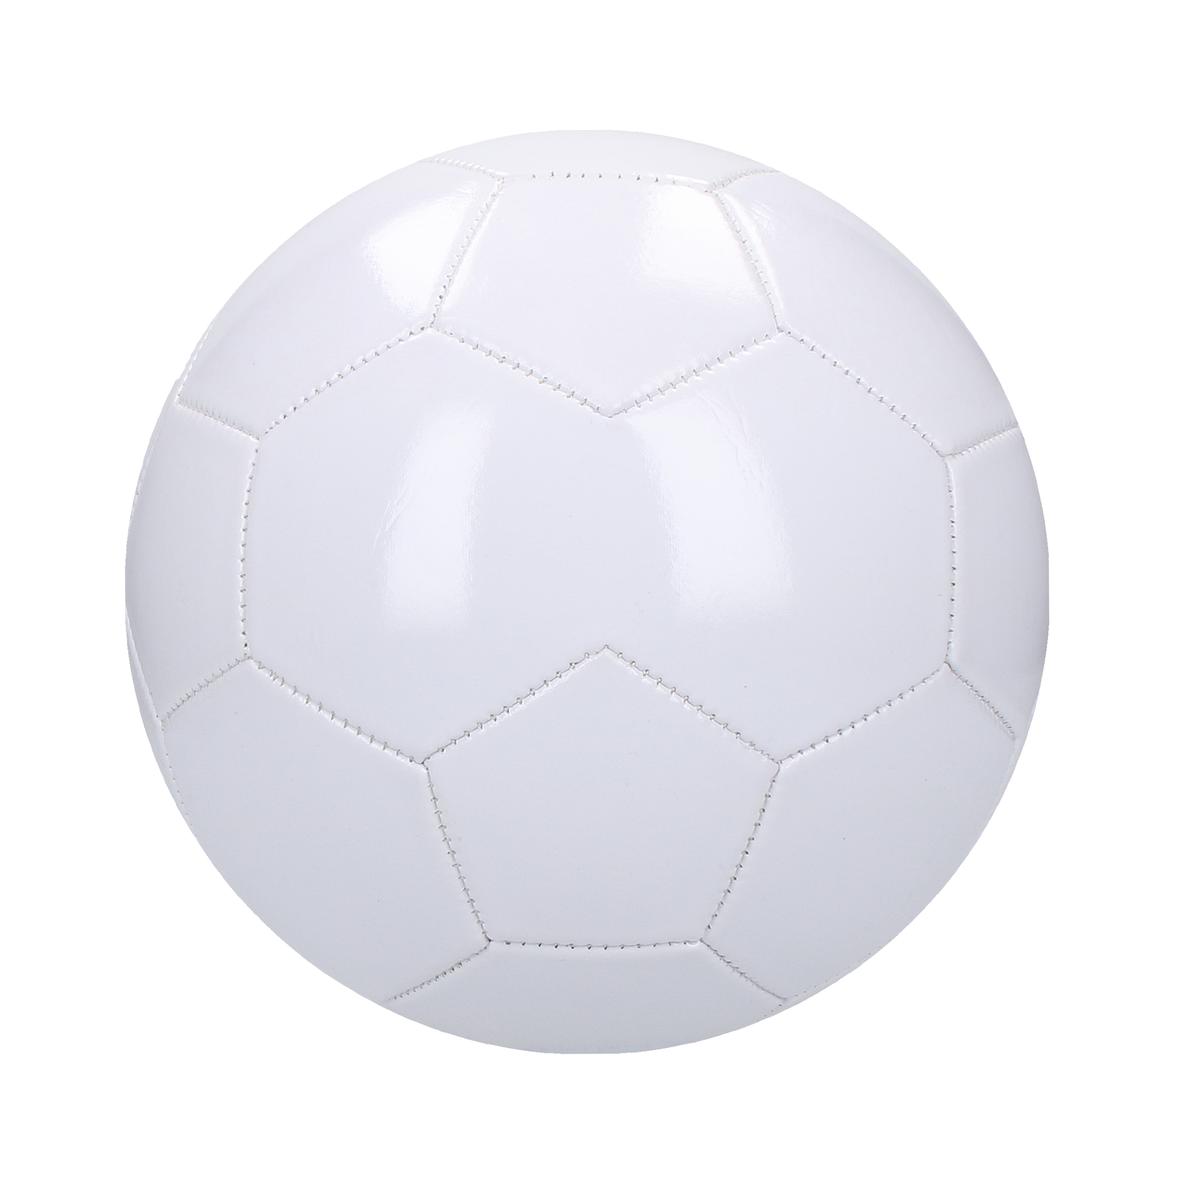 Ballon de football blanc personnalisé - Lukas - Zaprinta Belgique